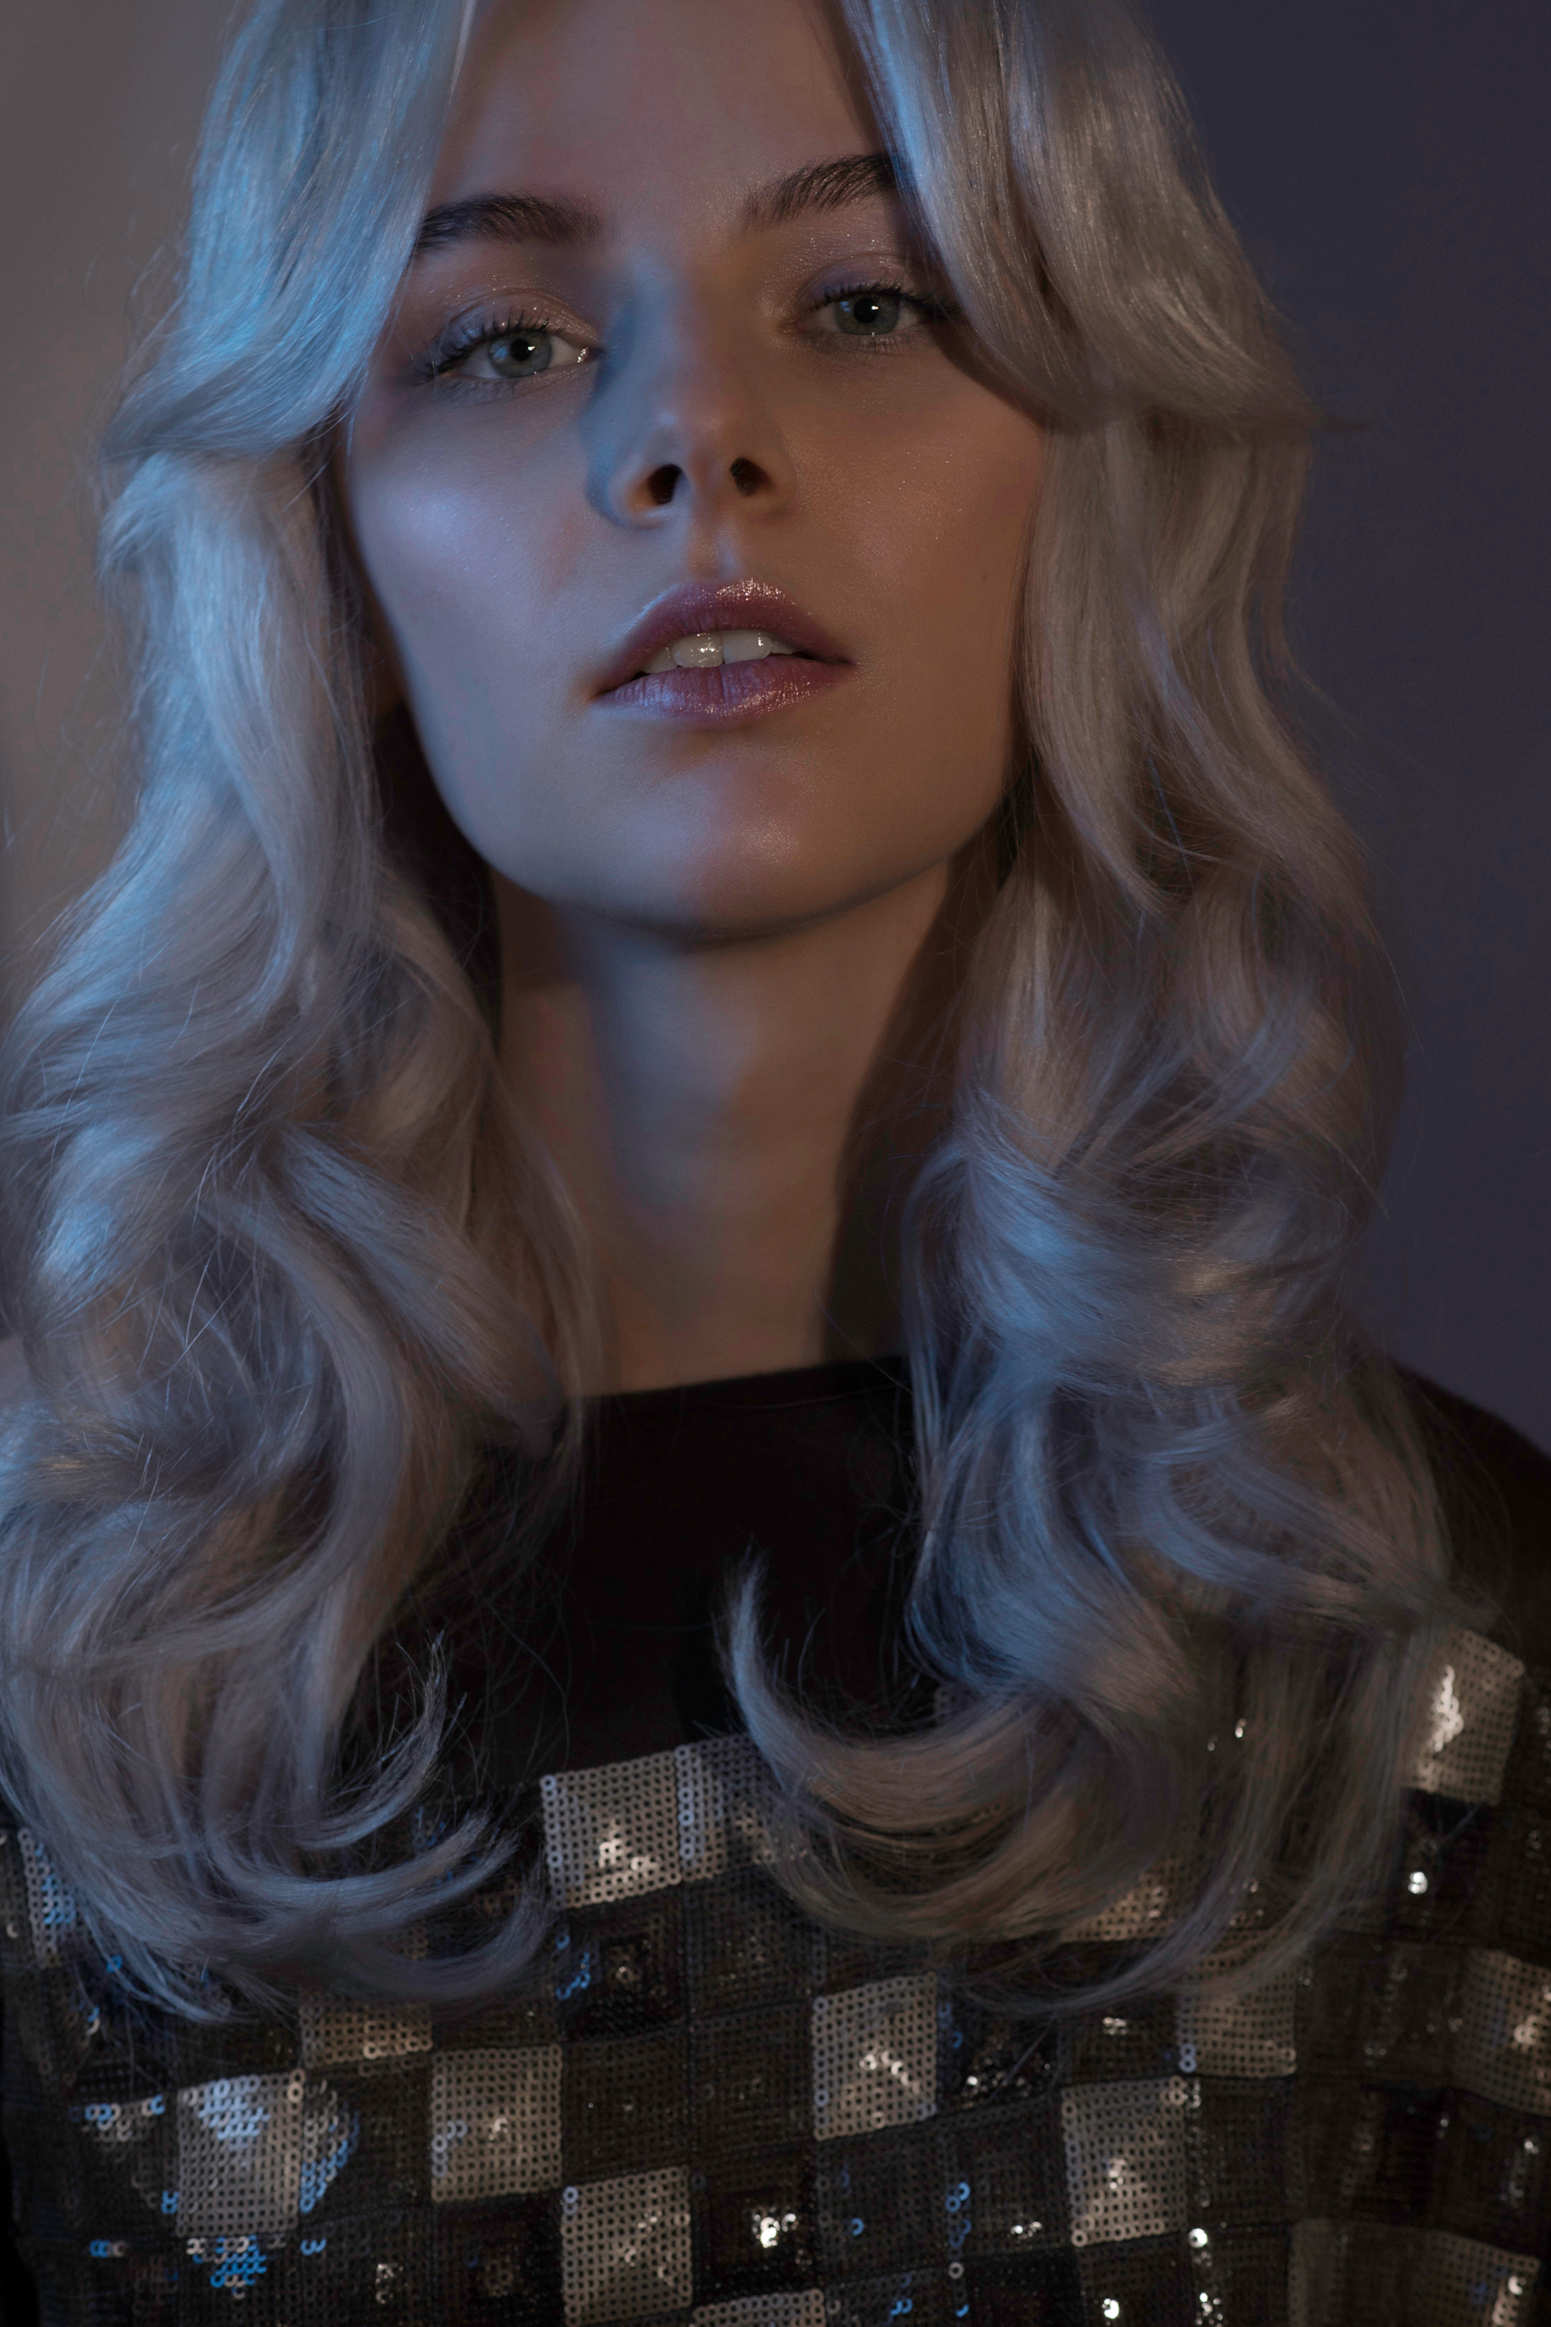 Model mit hellblonden, voluminösen Retro-Locken und Make-up mit silbernem Glitter gestylt von Hair & Make-up Artist Eva Gerholdt